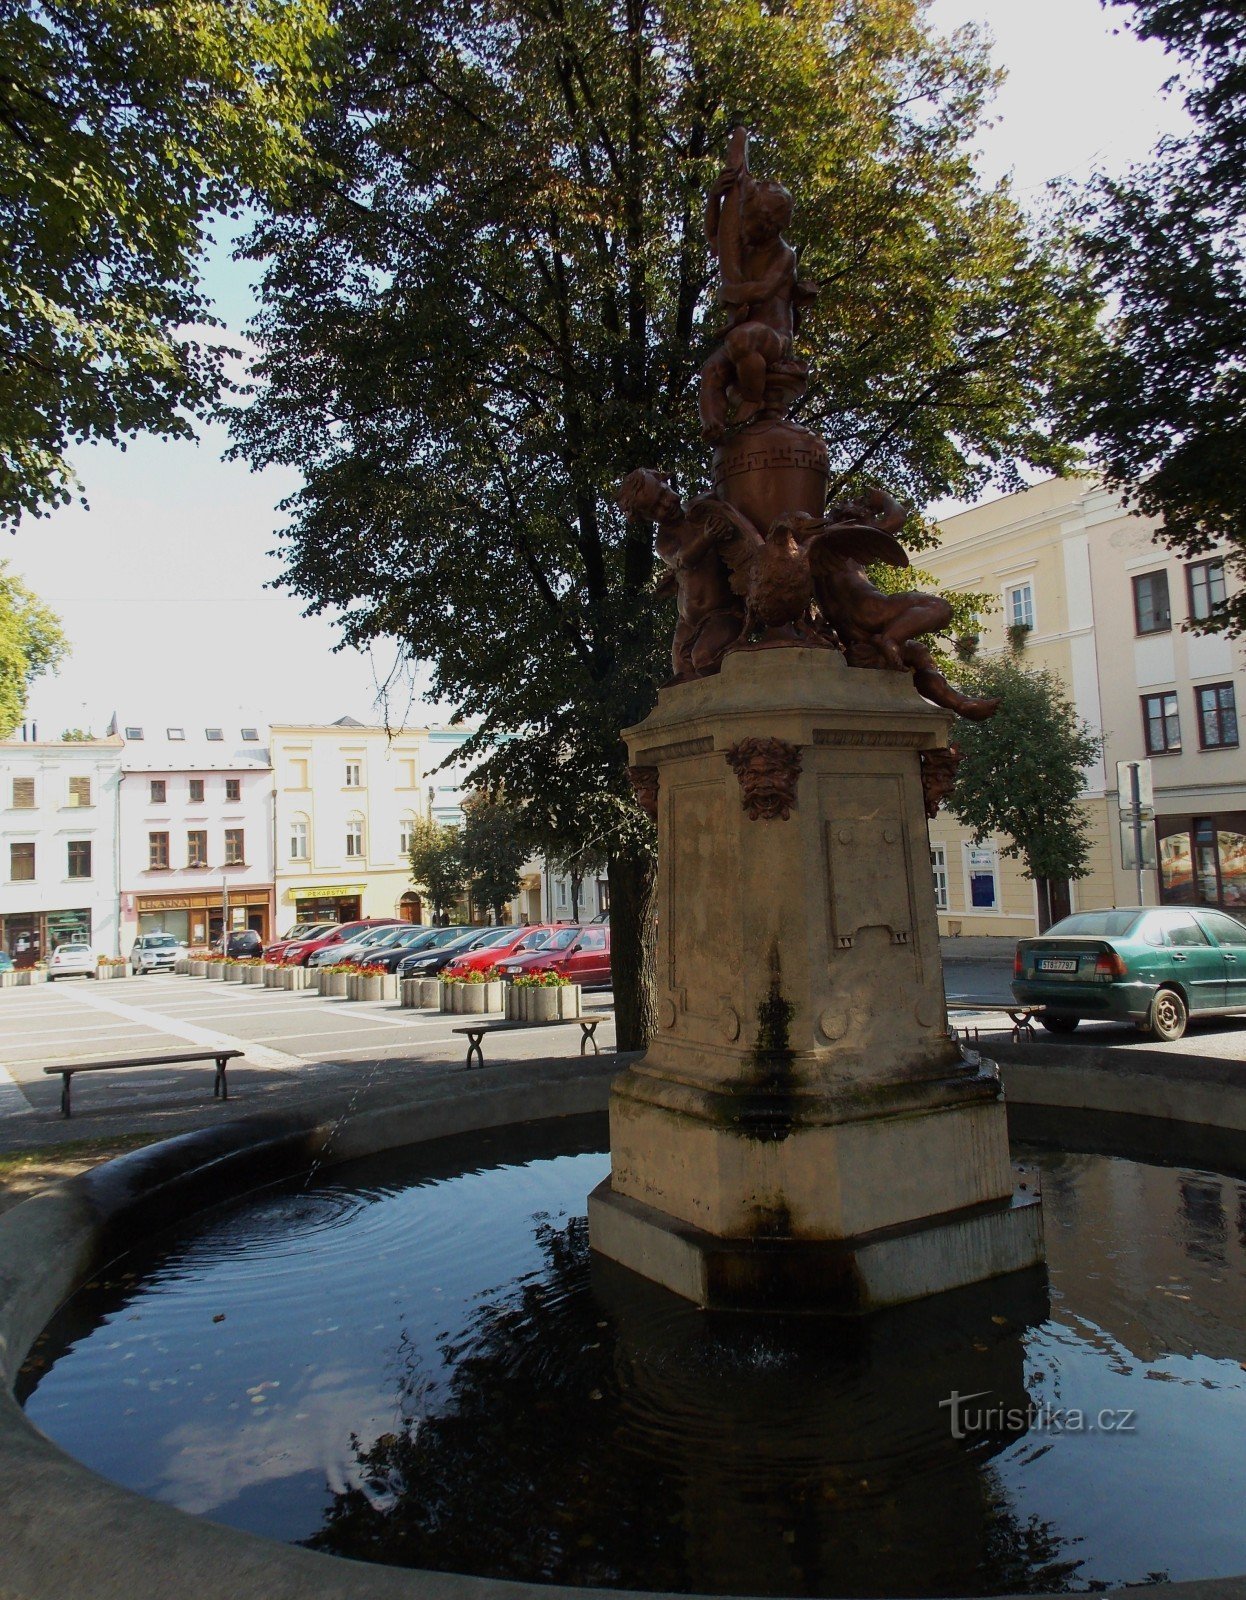 De fontein - het dominante kenmerk van het Masaryk-plein in Odary